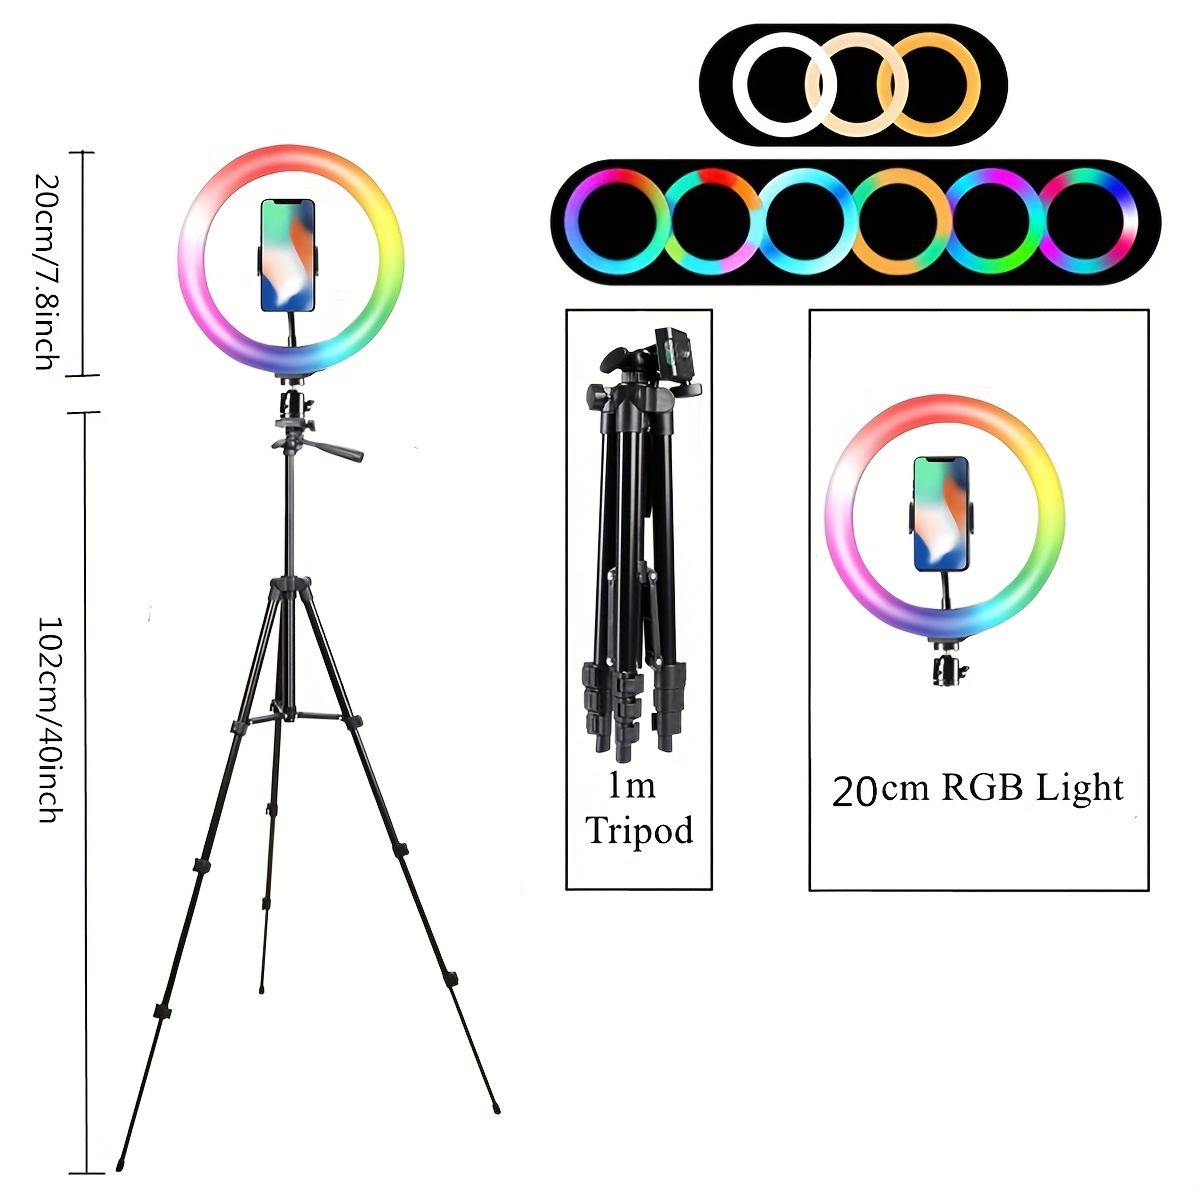 Anneau lumineux RVB de 8 po (20,3 cm) avec 20 modes d'éclairage